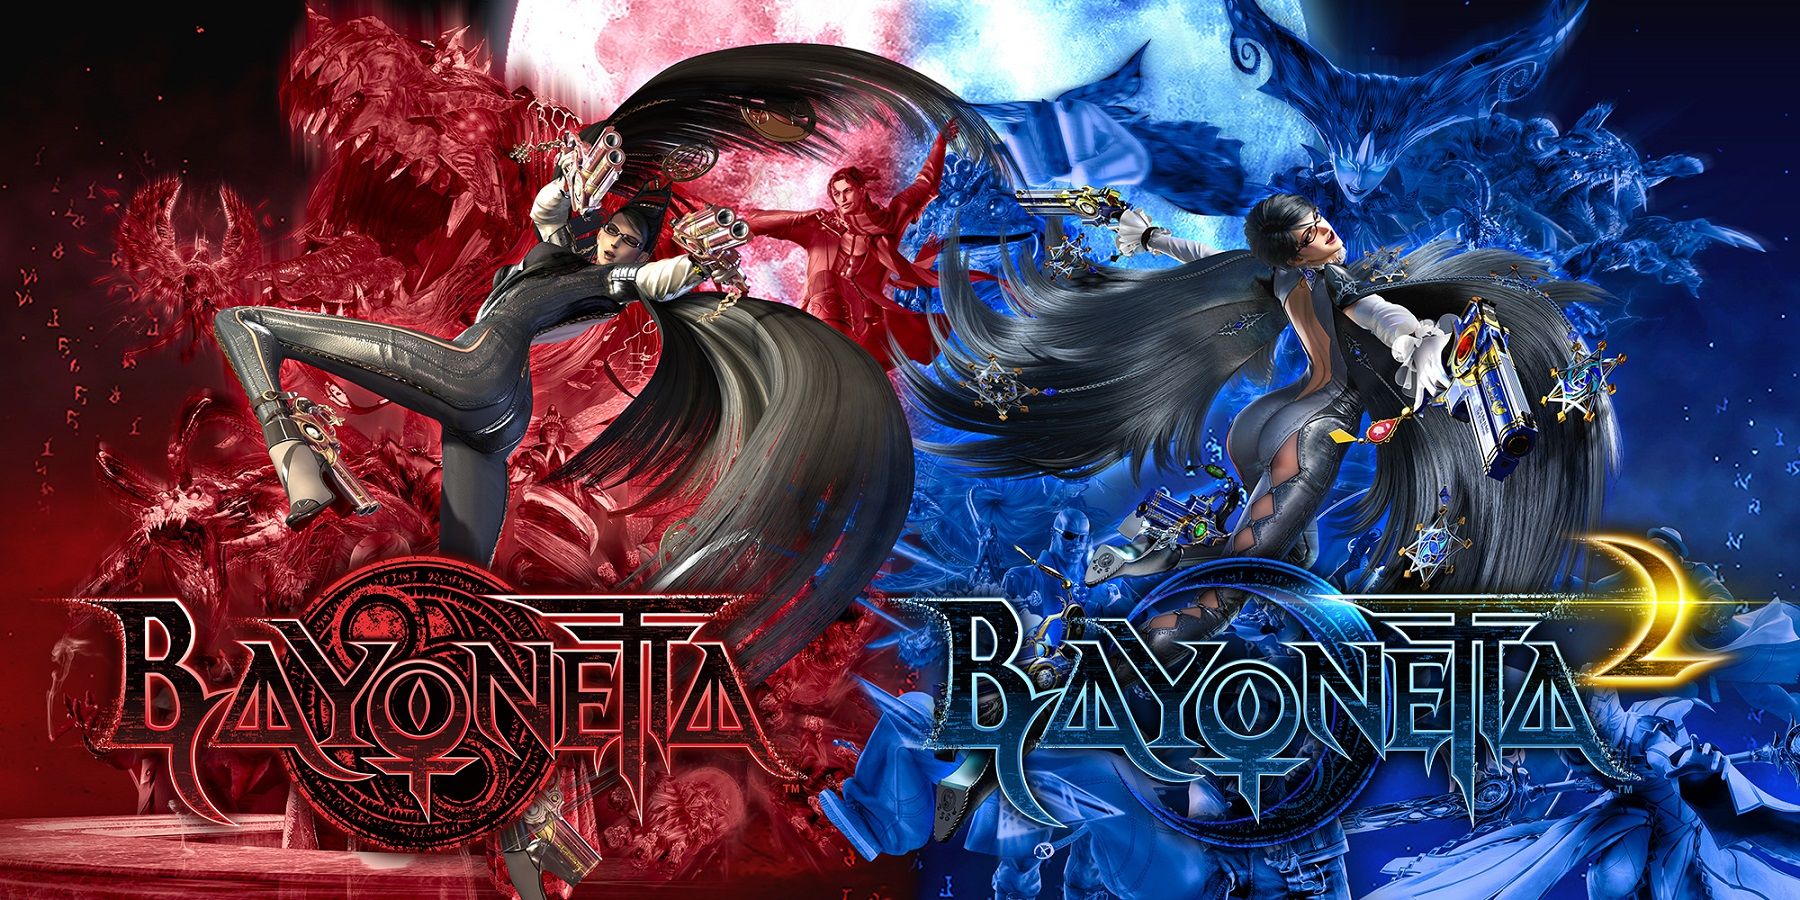 Platinum Games deseja lançar Bayonetta 2 e 3 em outras plataformas